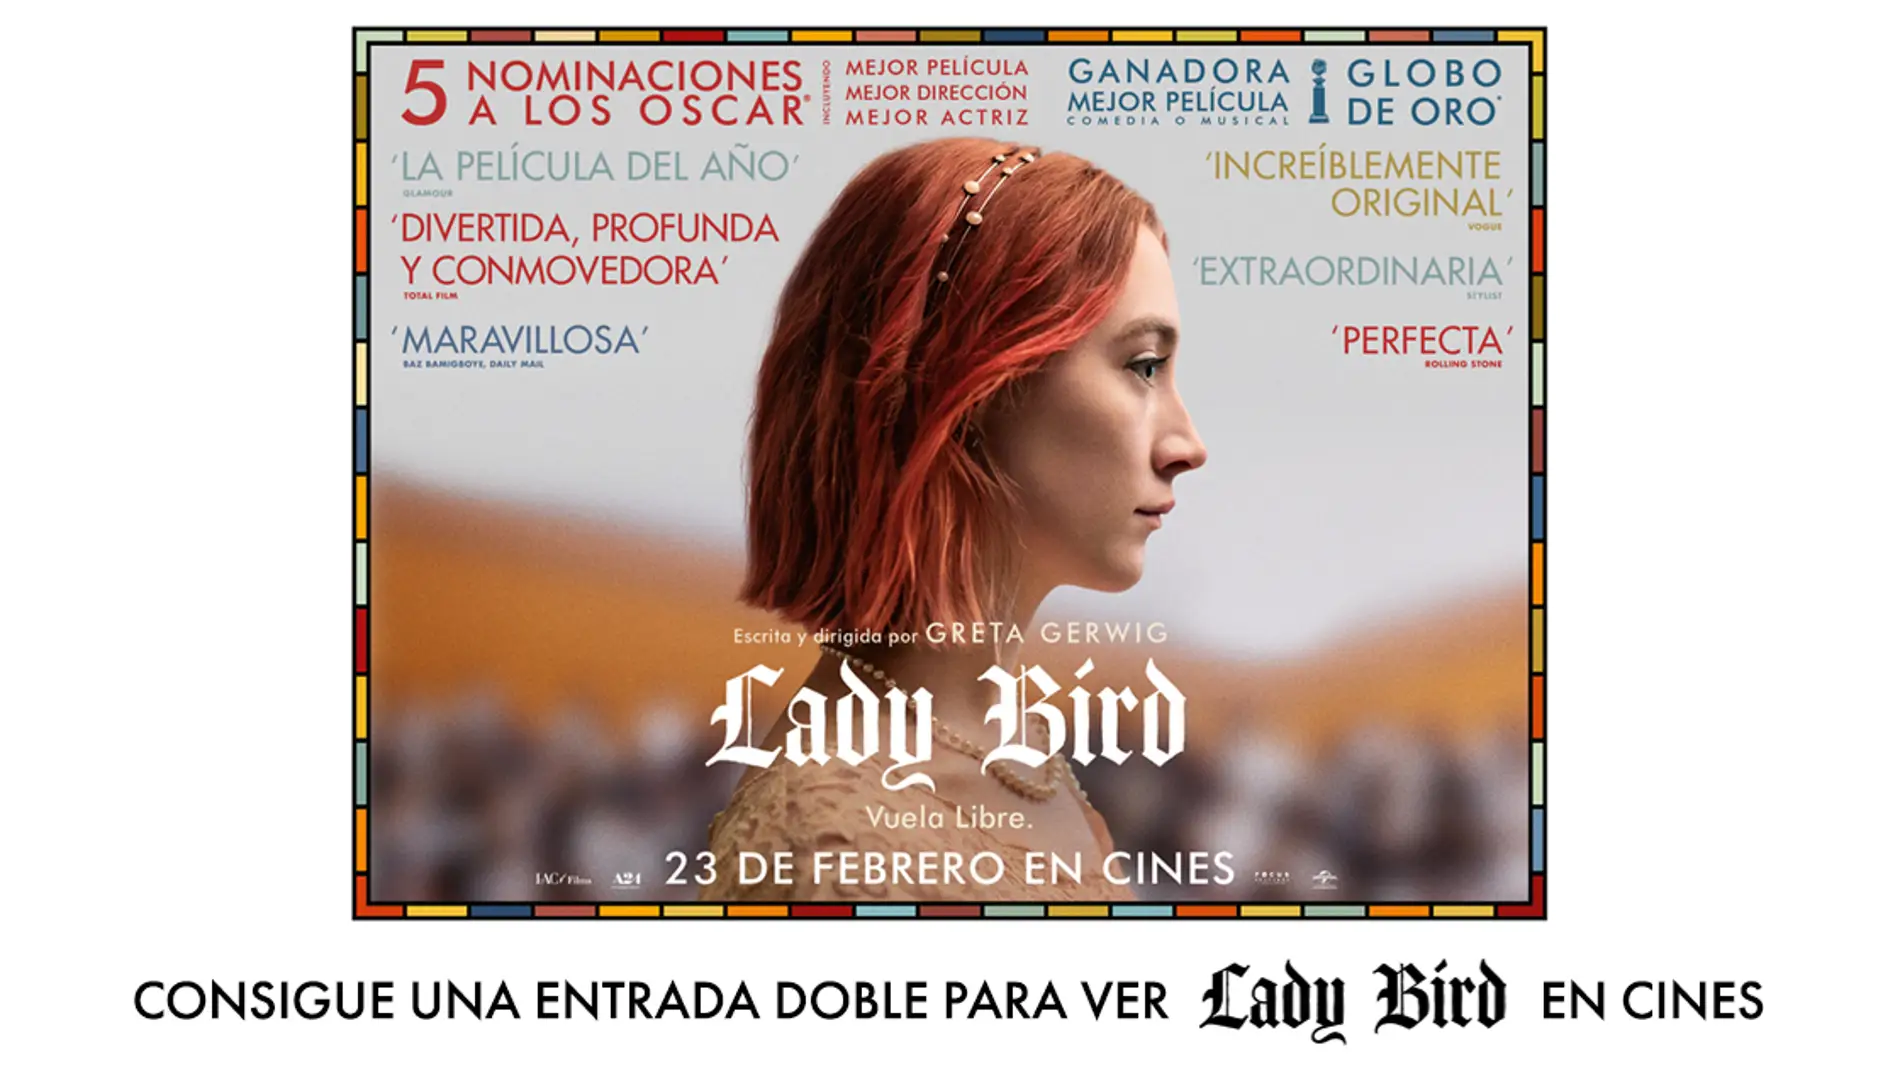 Concurso 'Lady Bird'